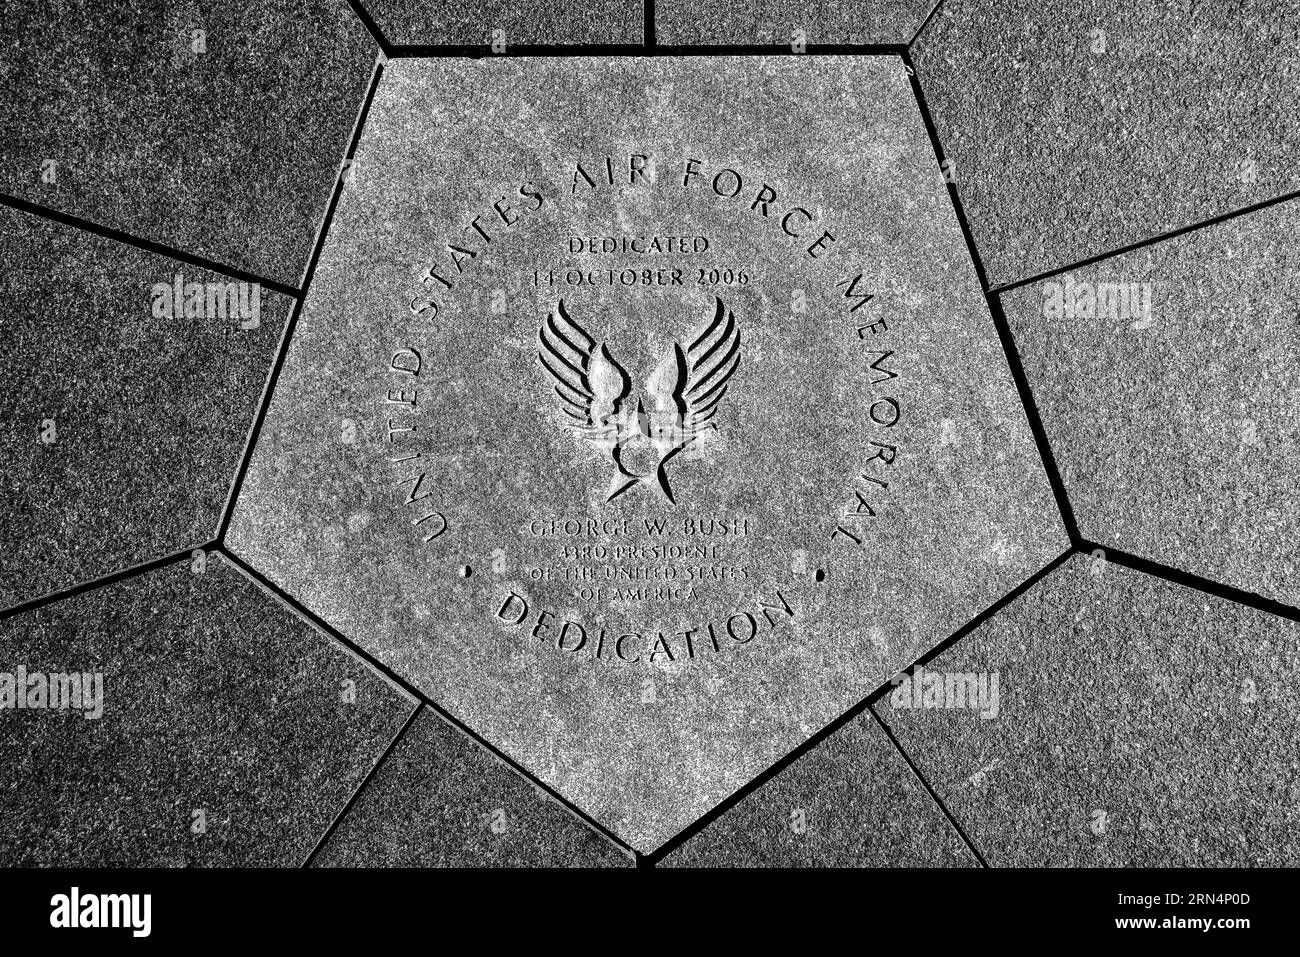 ARLINGTON, VA - Ein Grundstein im Zentrum des US Air Force Memorial. Er verweist auf die Gedenkfeier von Präsident George W. Bush vom 14. Oktober 2006. Das United States Air Force Memorial befindet sich in Arlington, Virginia, neben dem Pentagon und gegenüber dem Potomac River von Washington D.C. und ehrt den Dienst des Personals der United States Air Force und ihrer Kulturorganisationen. Das Herzstück der Gedenkstätte ist ein Satz von drei Stahlspitzen, die über 200 Meter über der Umgebung ragten. Sie sind so gestaltet, dass sie das Bild der „Kontraste der Air Force Thunderbirds AS“ erwecken Stockfoto